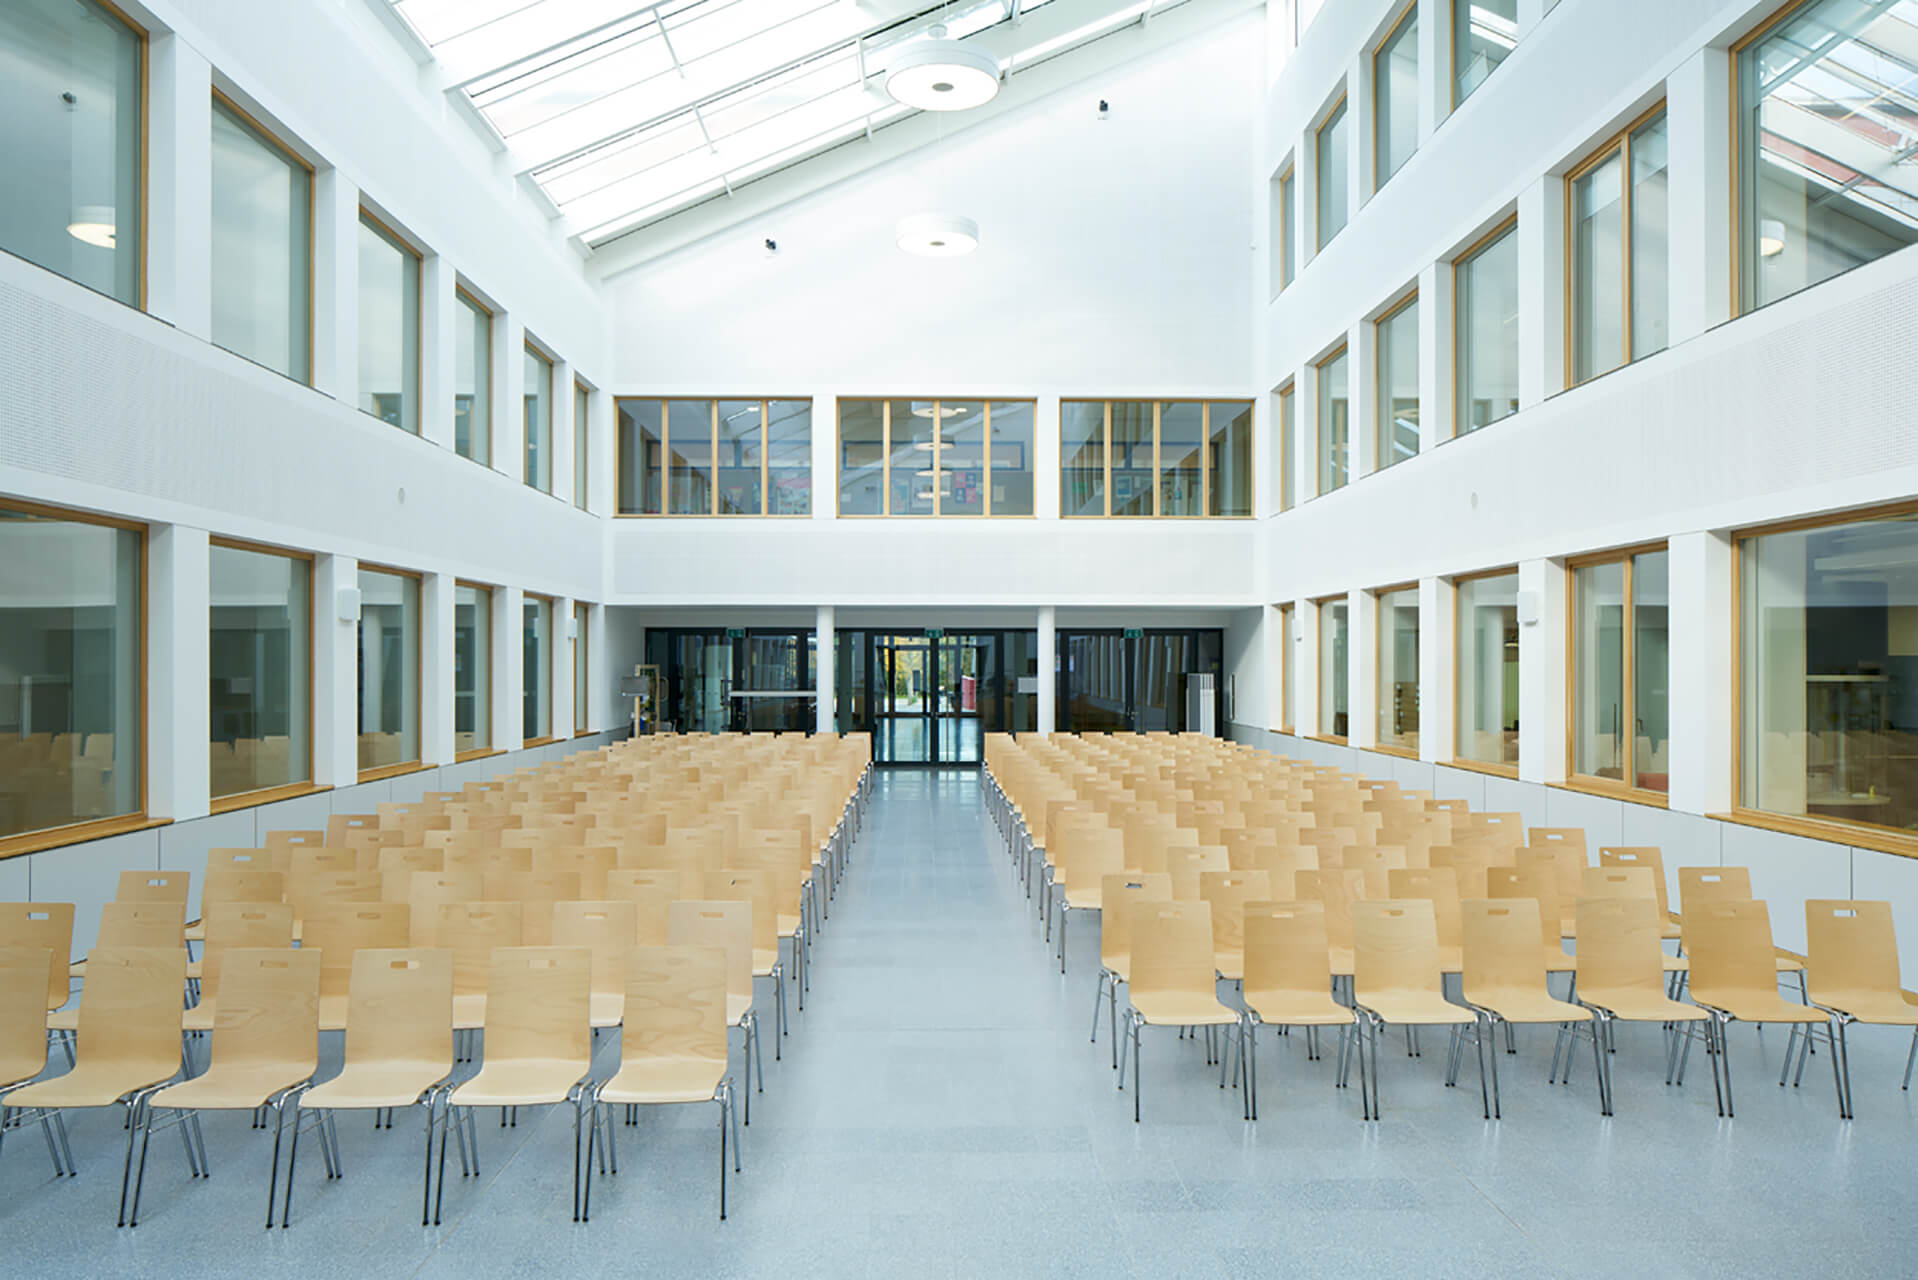 Gymnasium Königsbrunn